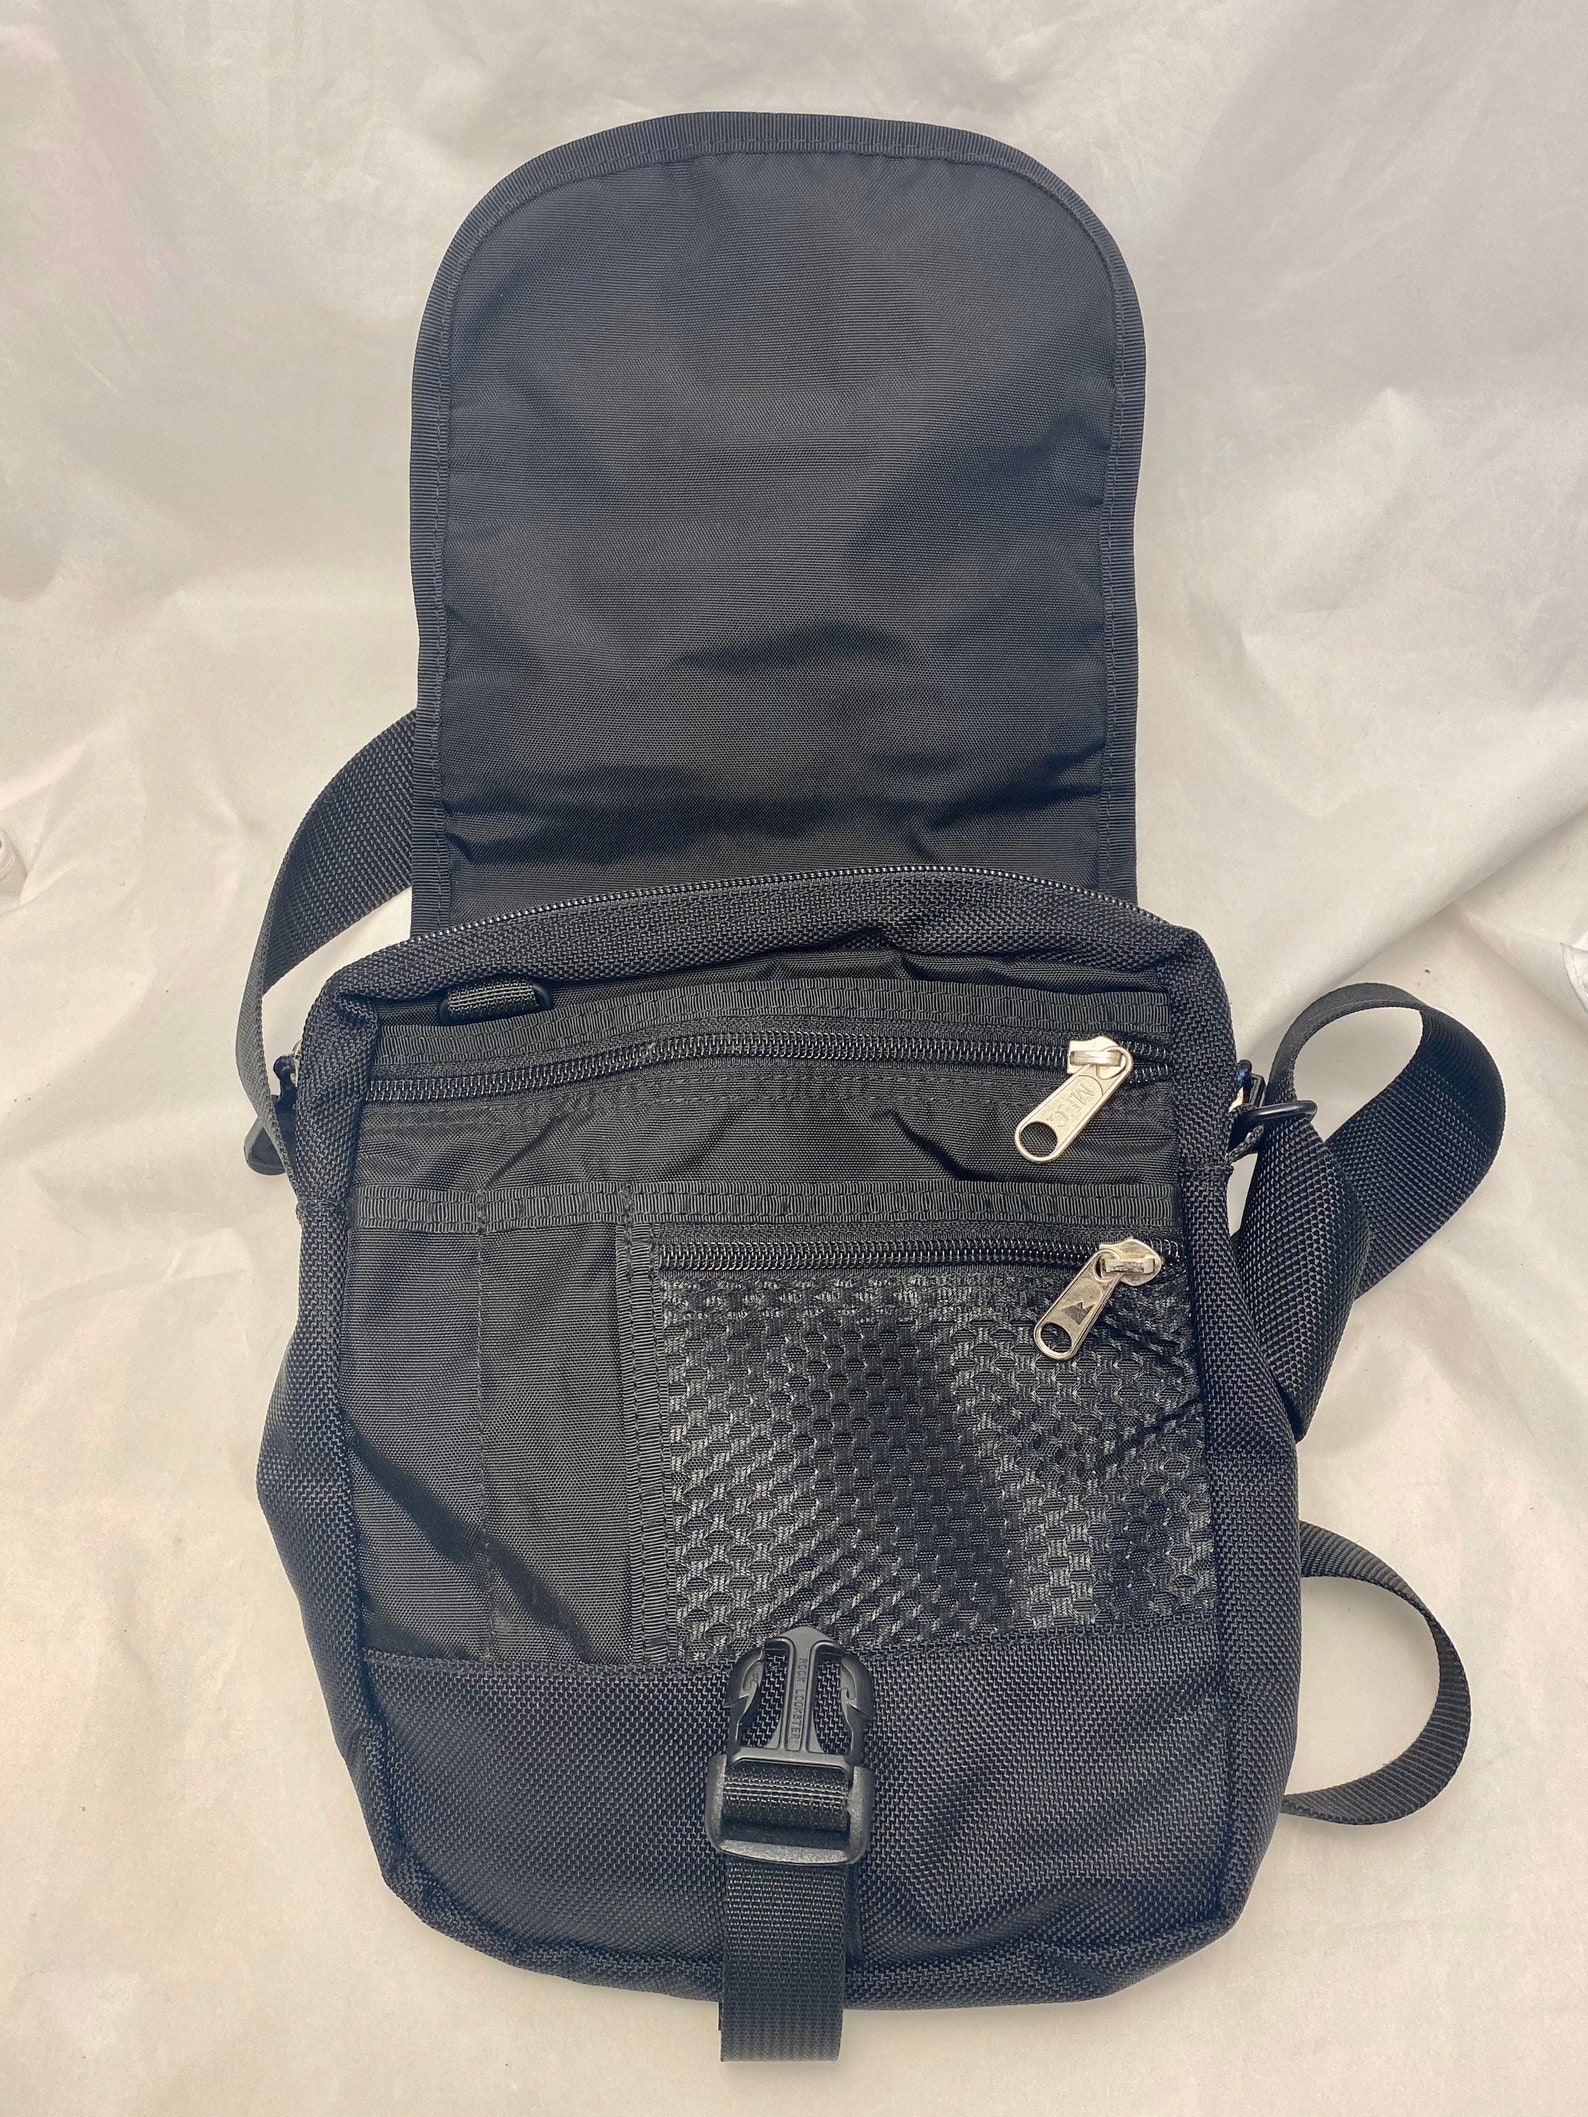 Mountain Equipment Co Op Vintage Shoulder Bag Black Nylon | Etsy